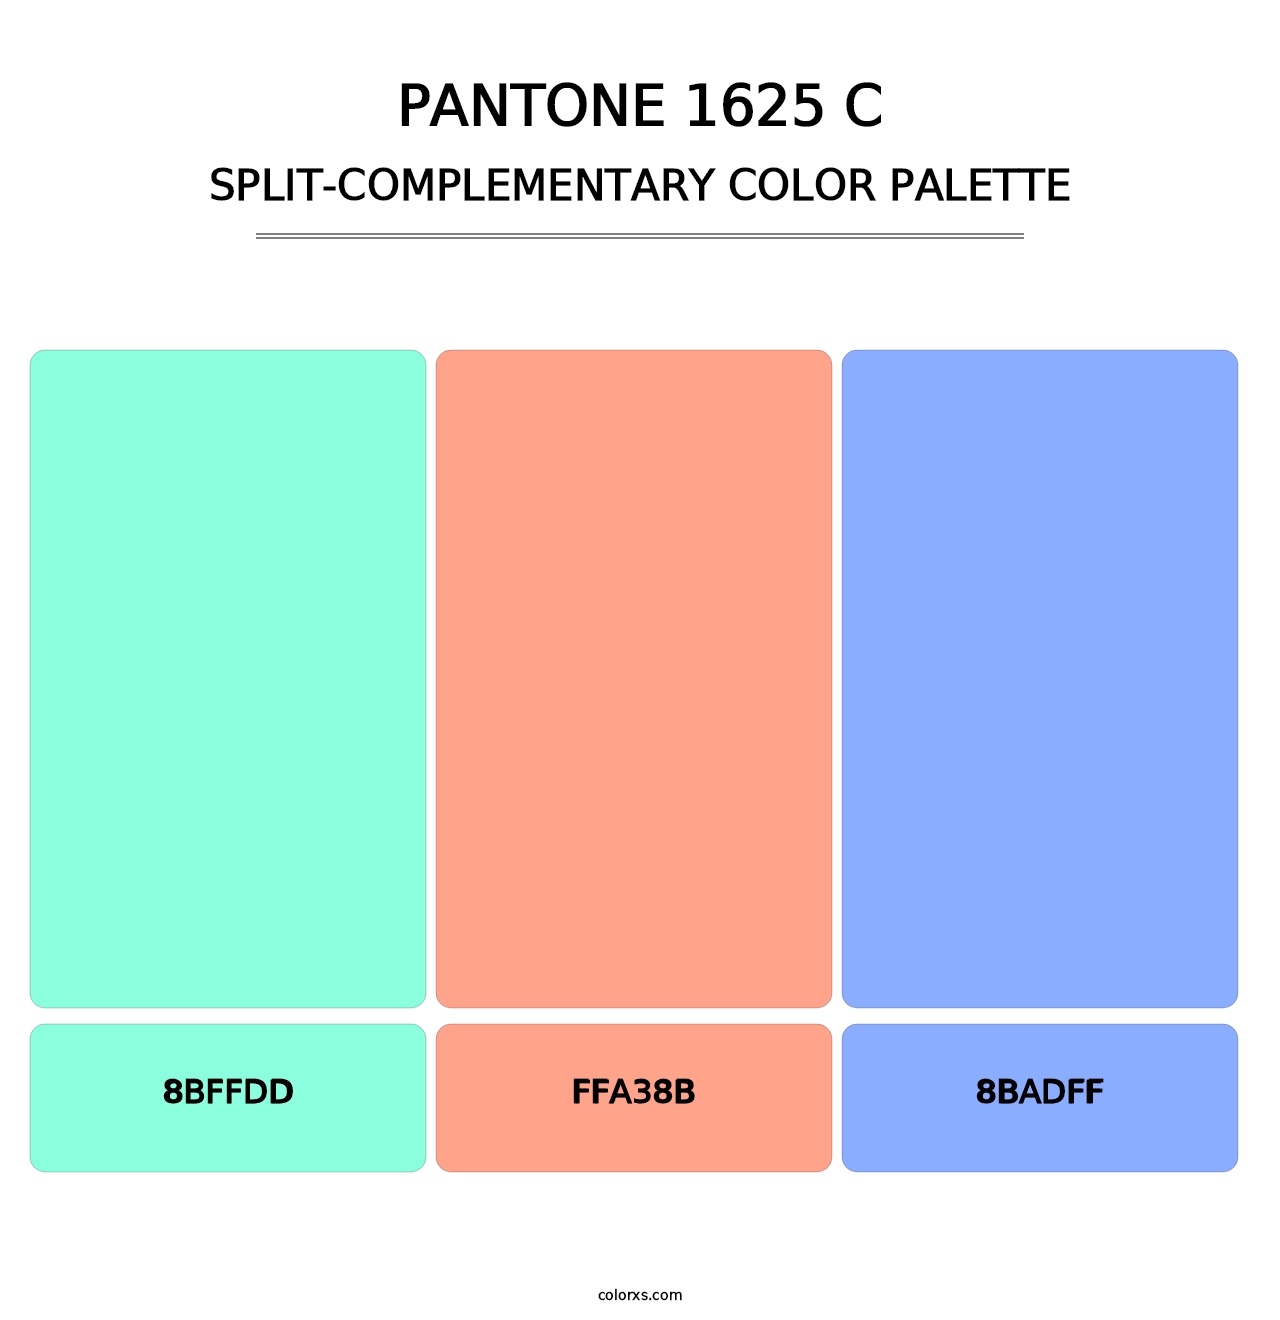 PANTONE 1625 C - Split-Complementary Color Palette